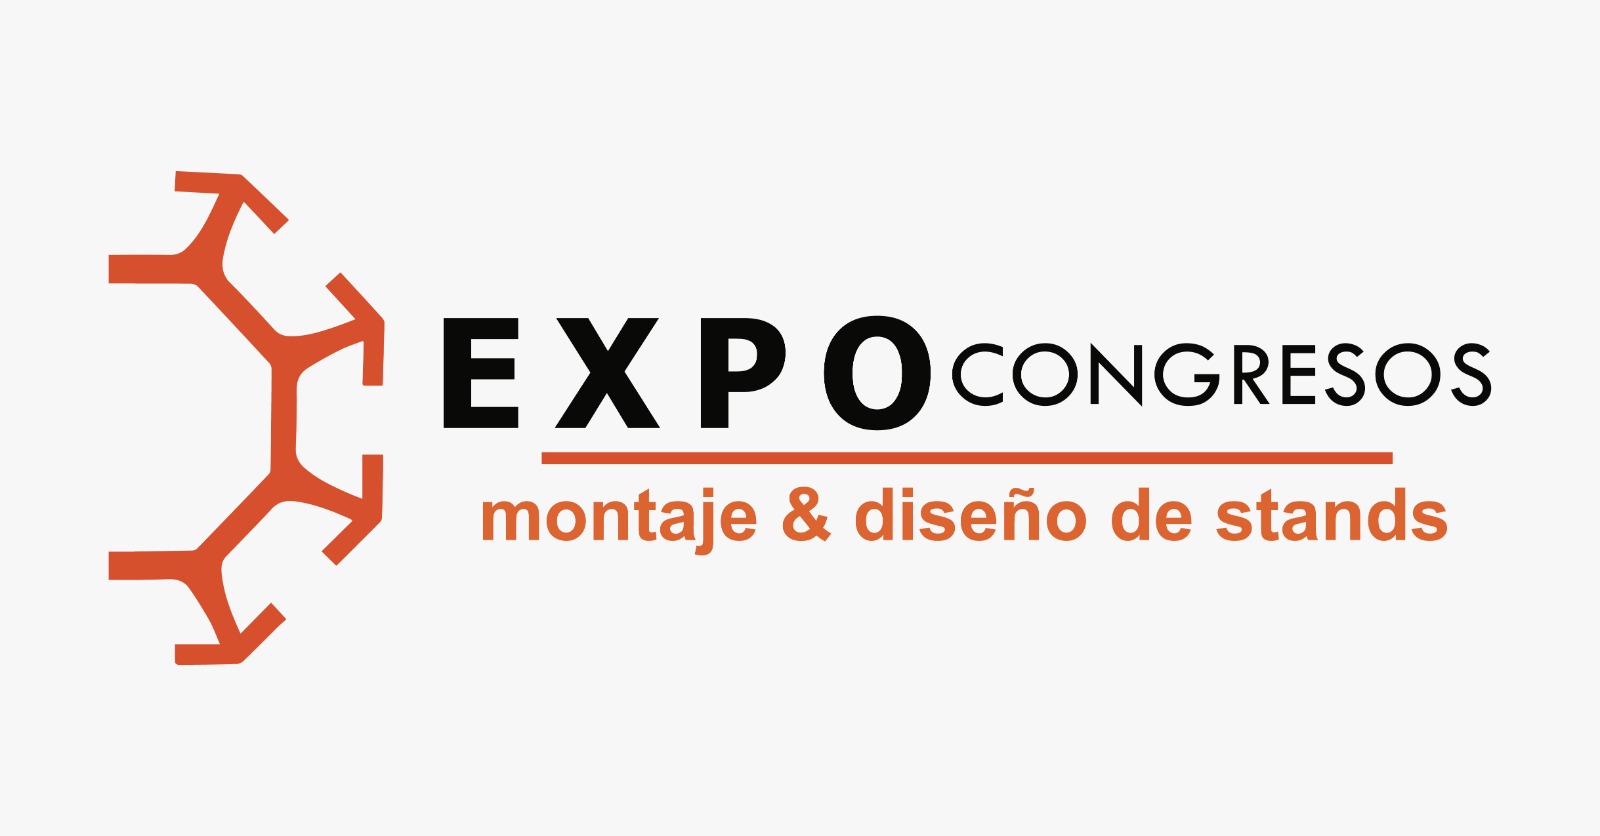 Expo_congresos